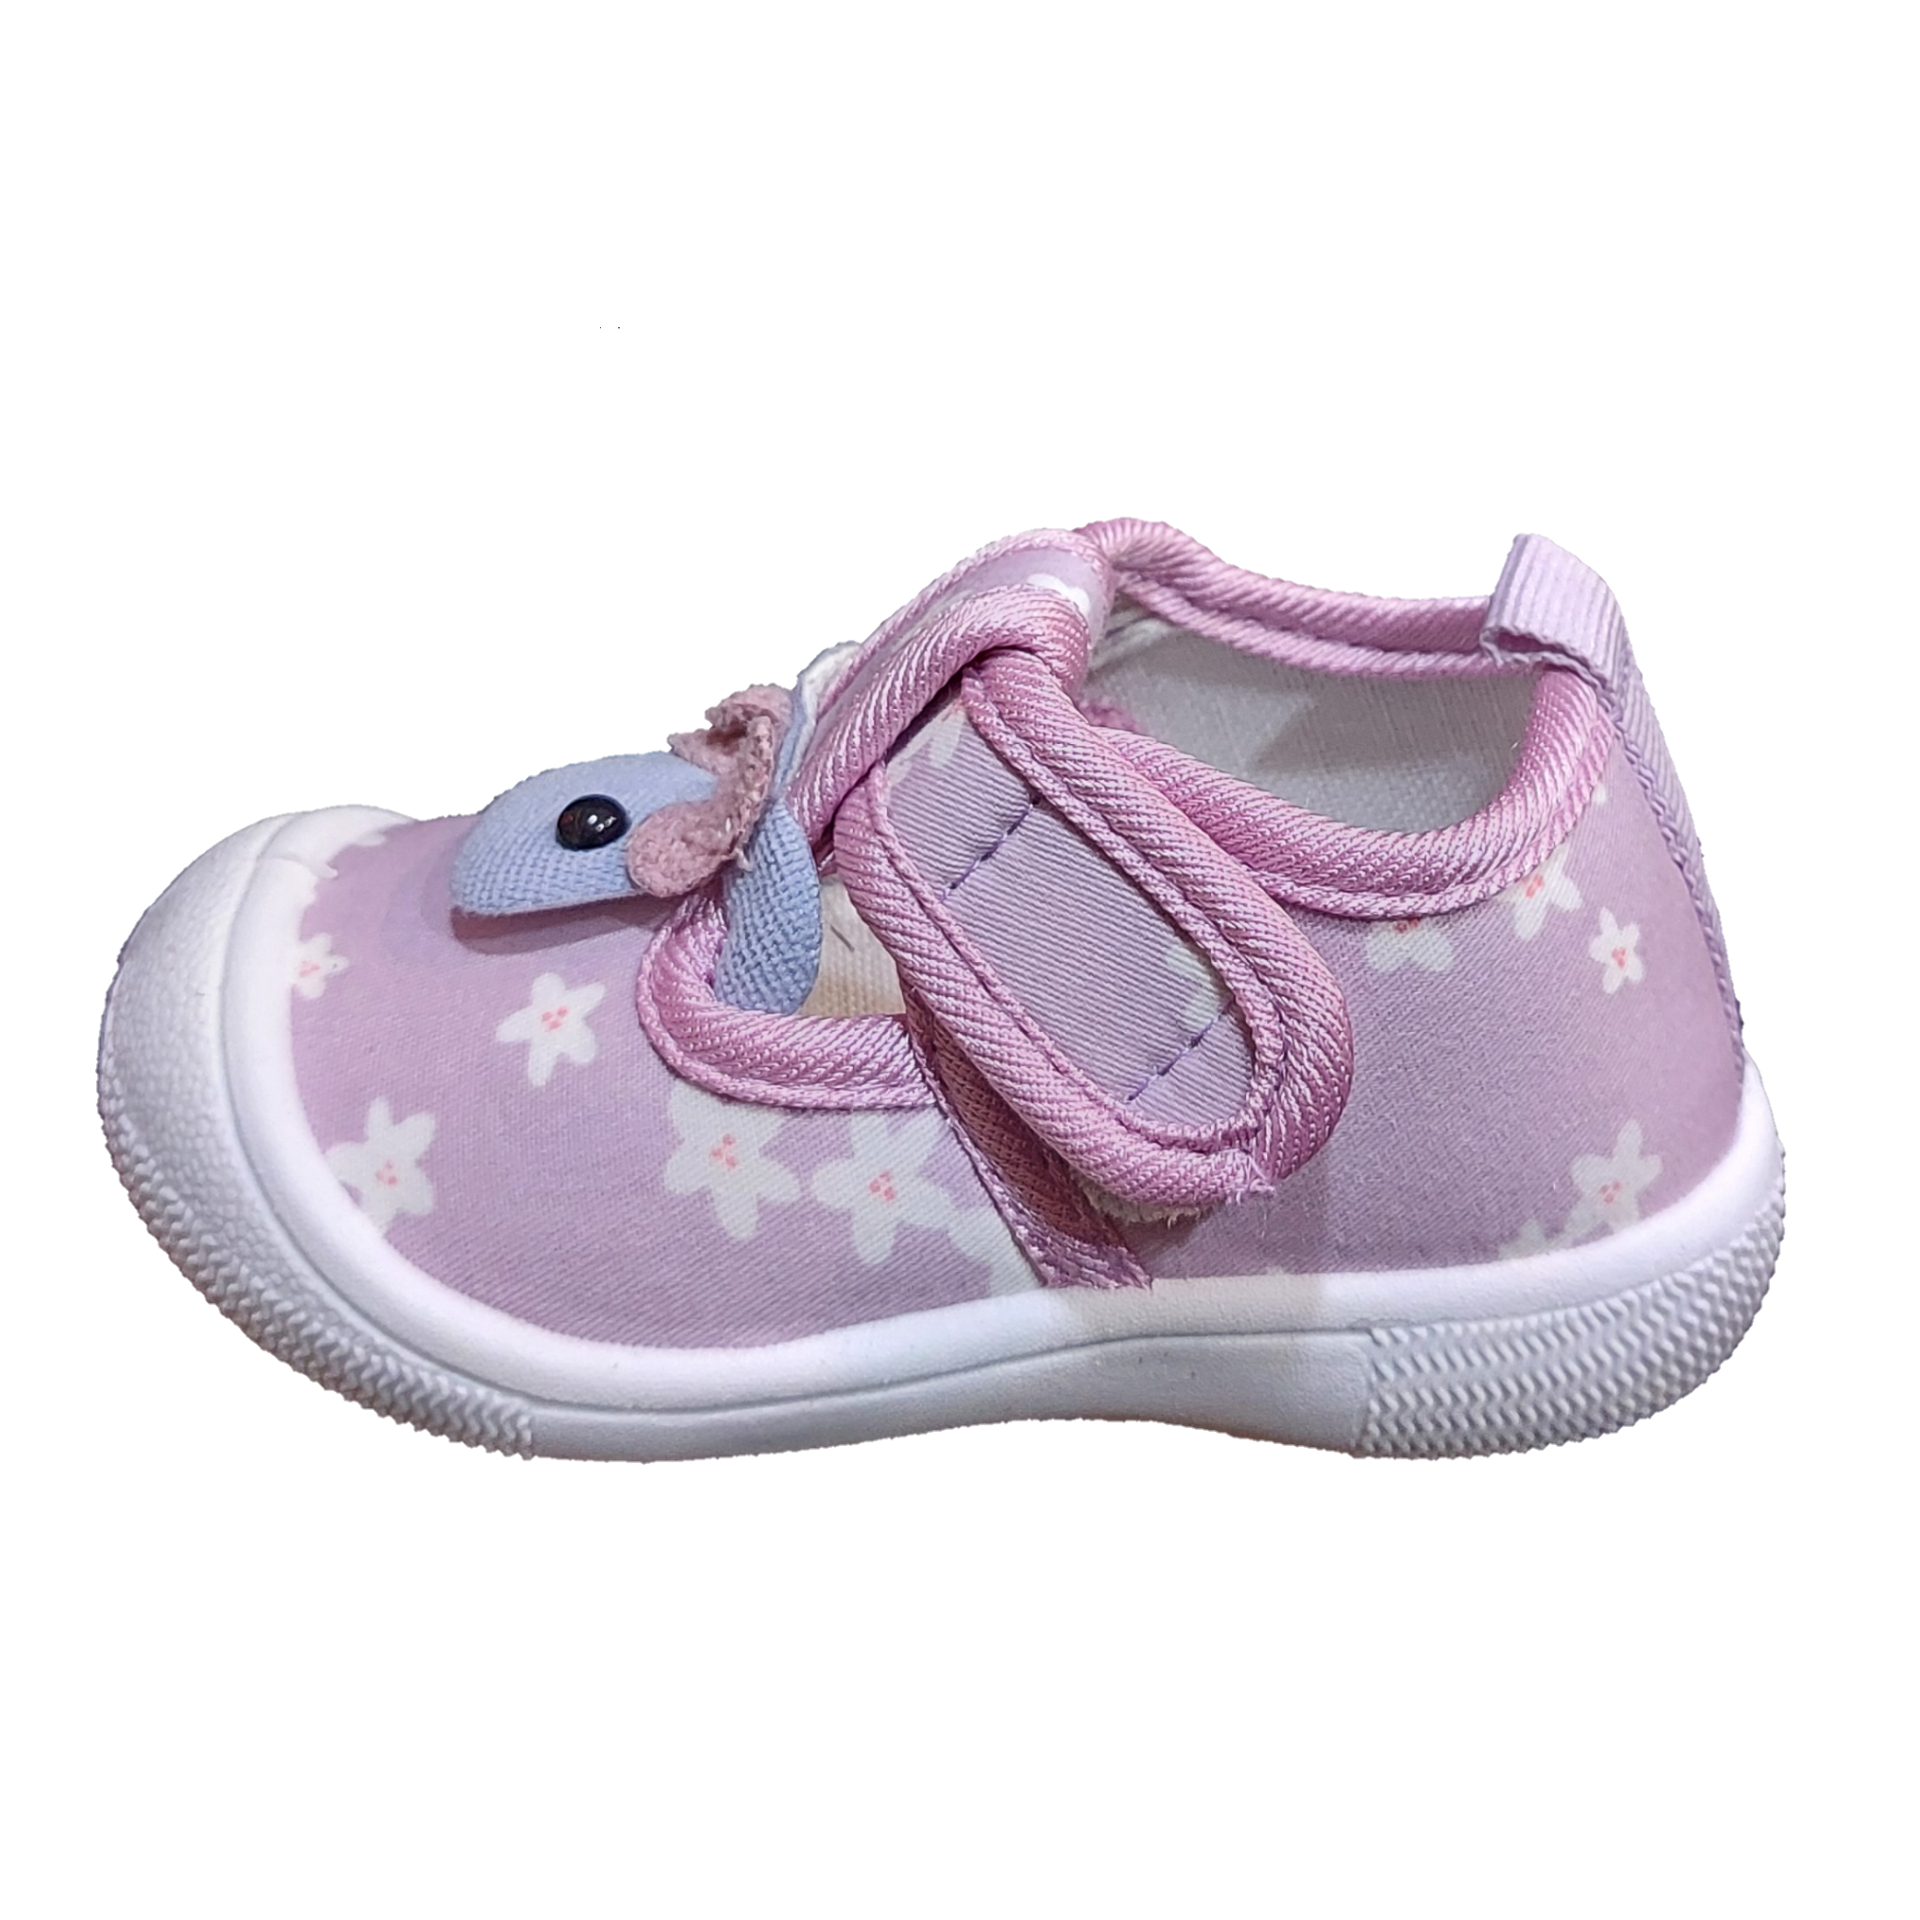 نقد و بررسی کفش راحتی نوزادی مدل سوتی کد 2-63 رنگ بنفش توسط خریداران